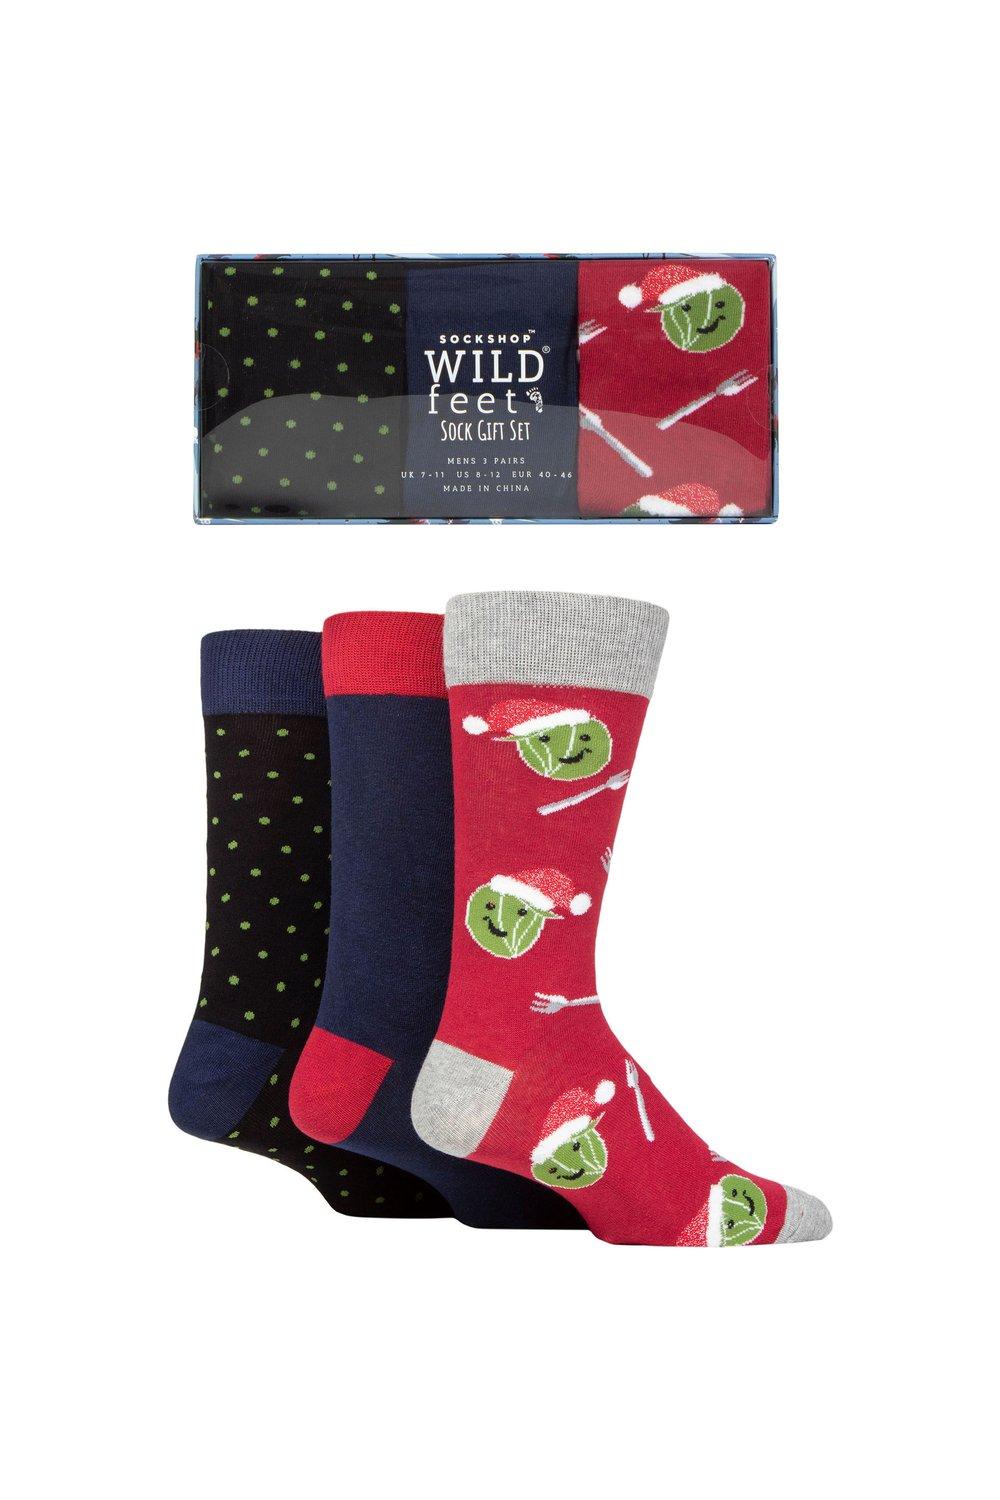 3 пары носков в подарочной упаковке winter wonderland christmas cube sockshop wild feet зеленый 3 пары рождественских плоских подарочных носков в упаковке SOCKSHOP Wild Feet, мультиколор